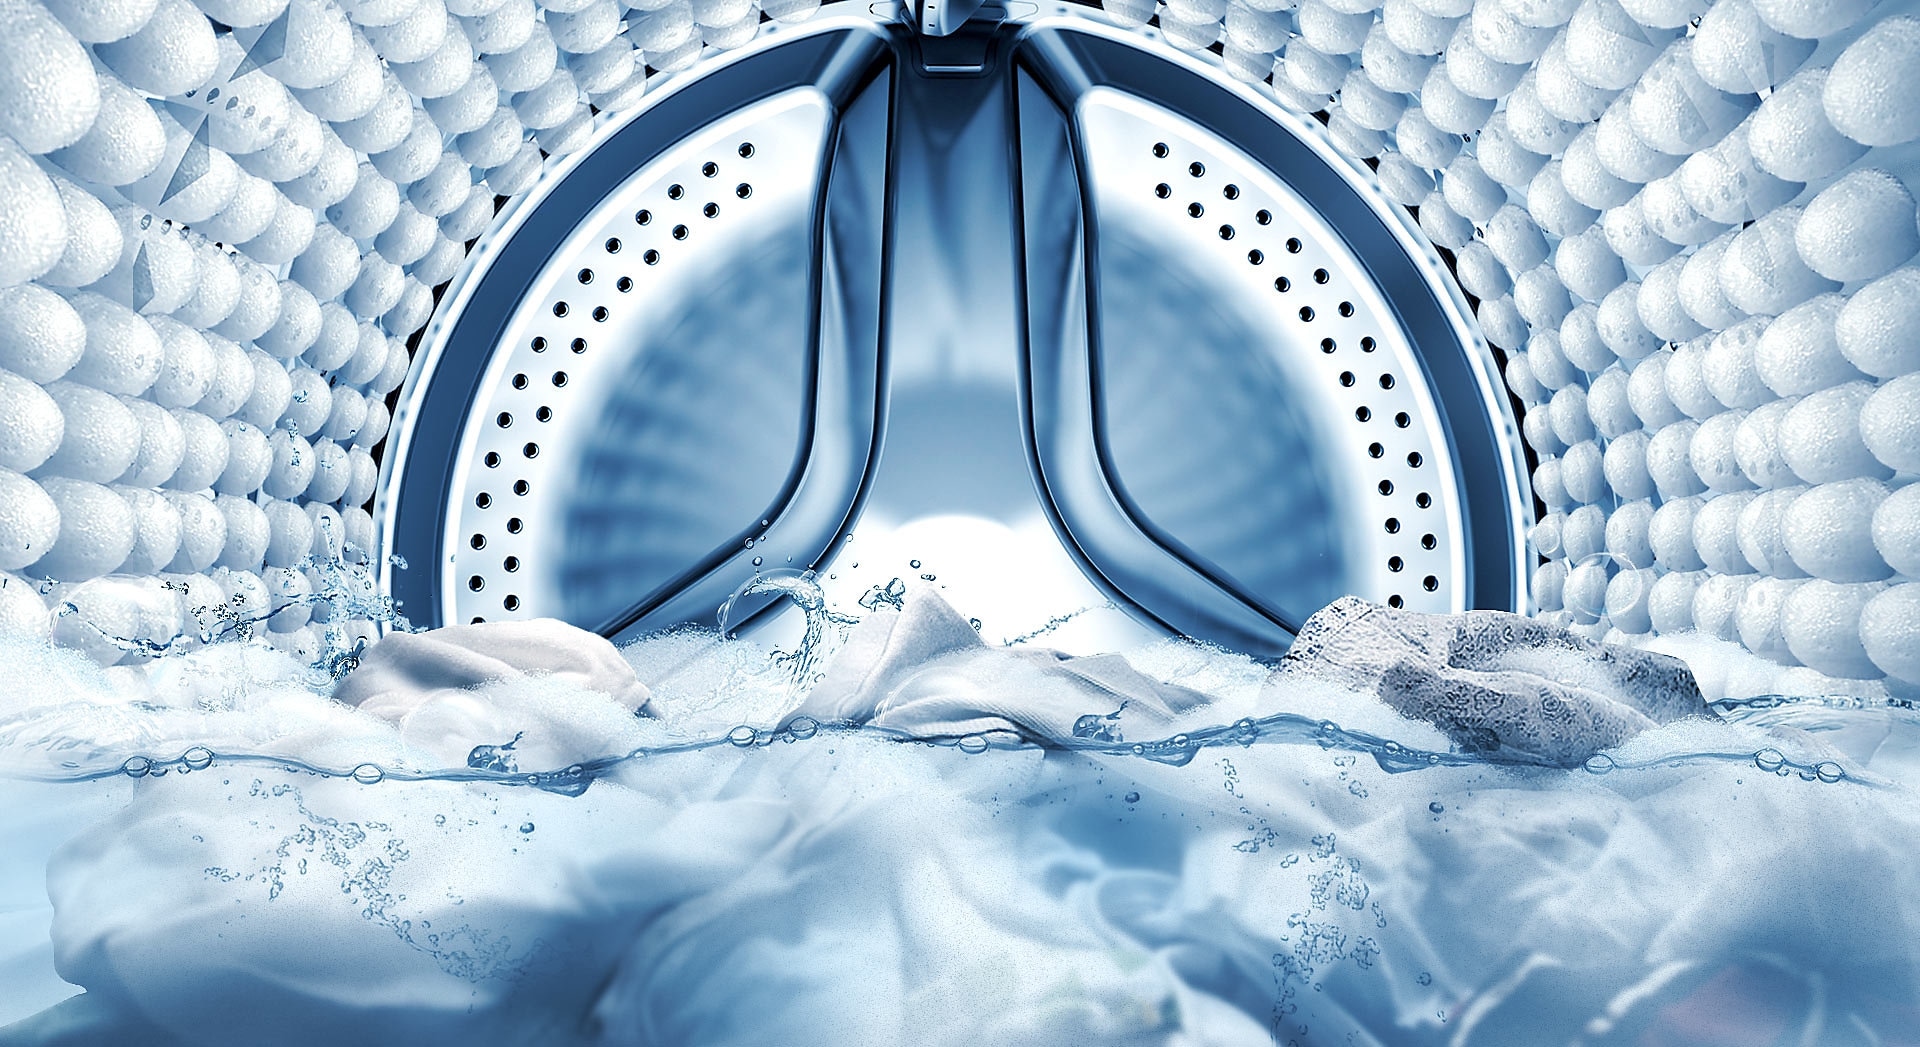 Изображение внутренней полости барабана, иллюстрирующее процесс проникновения пузырьков  в ткань одежды и удаления пятен.